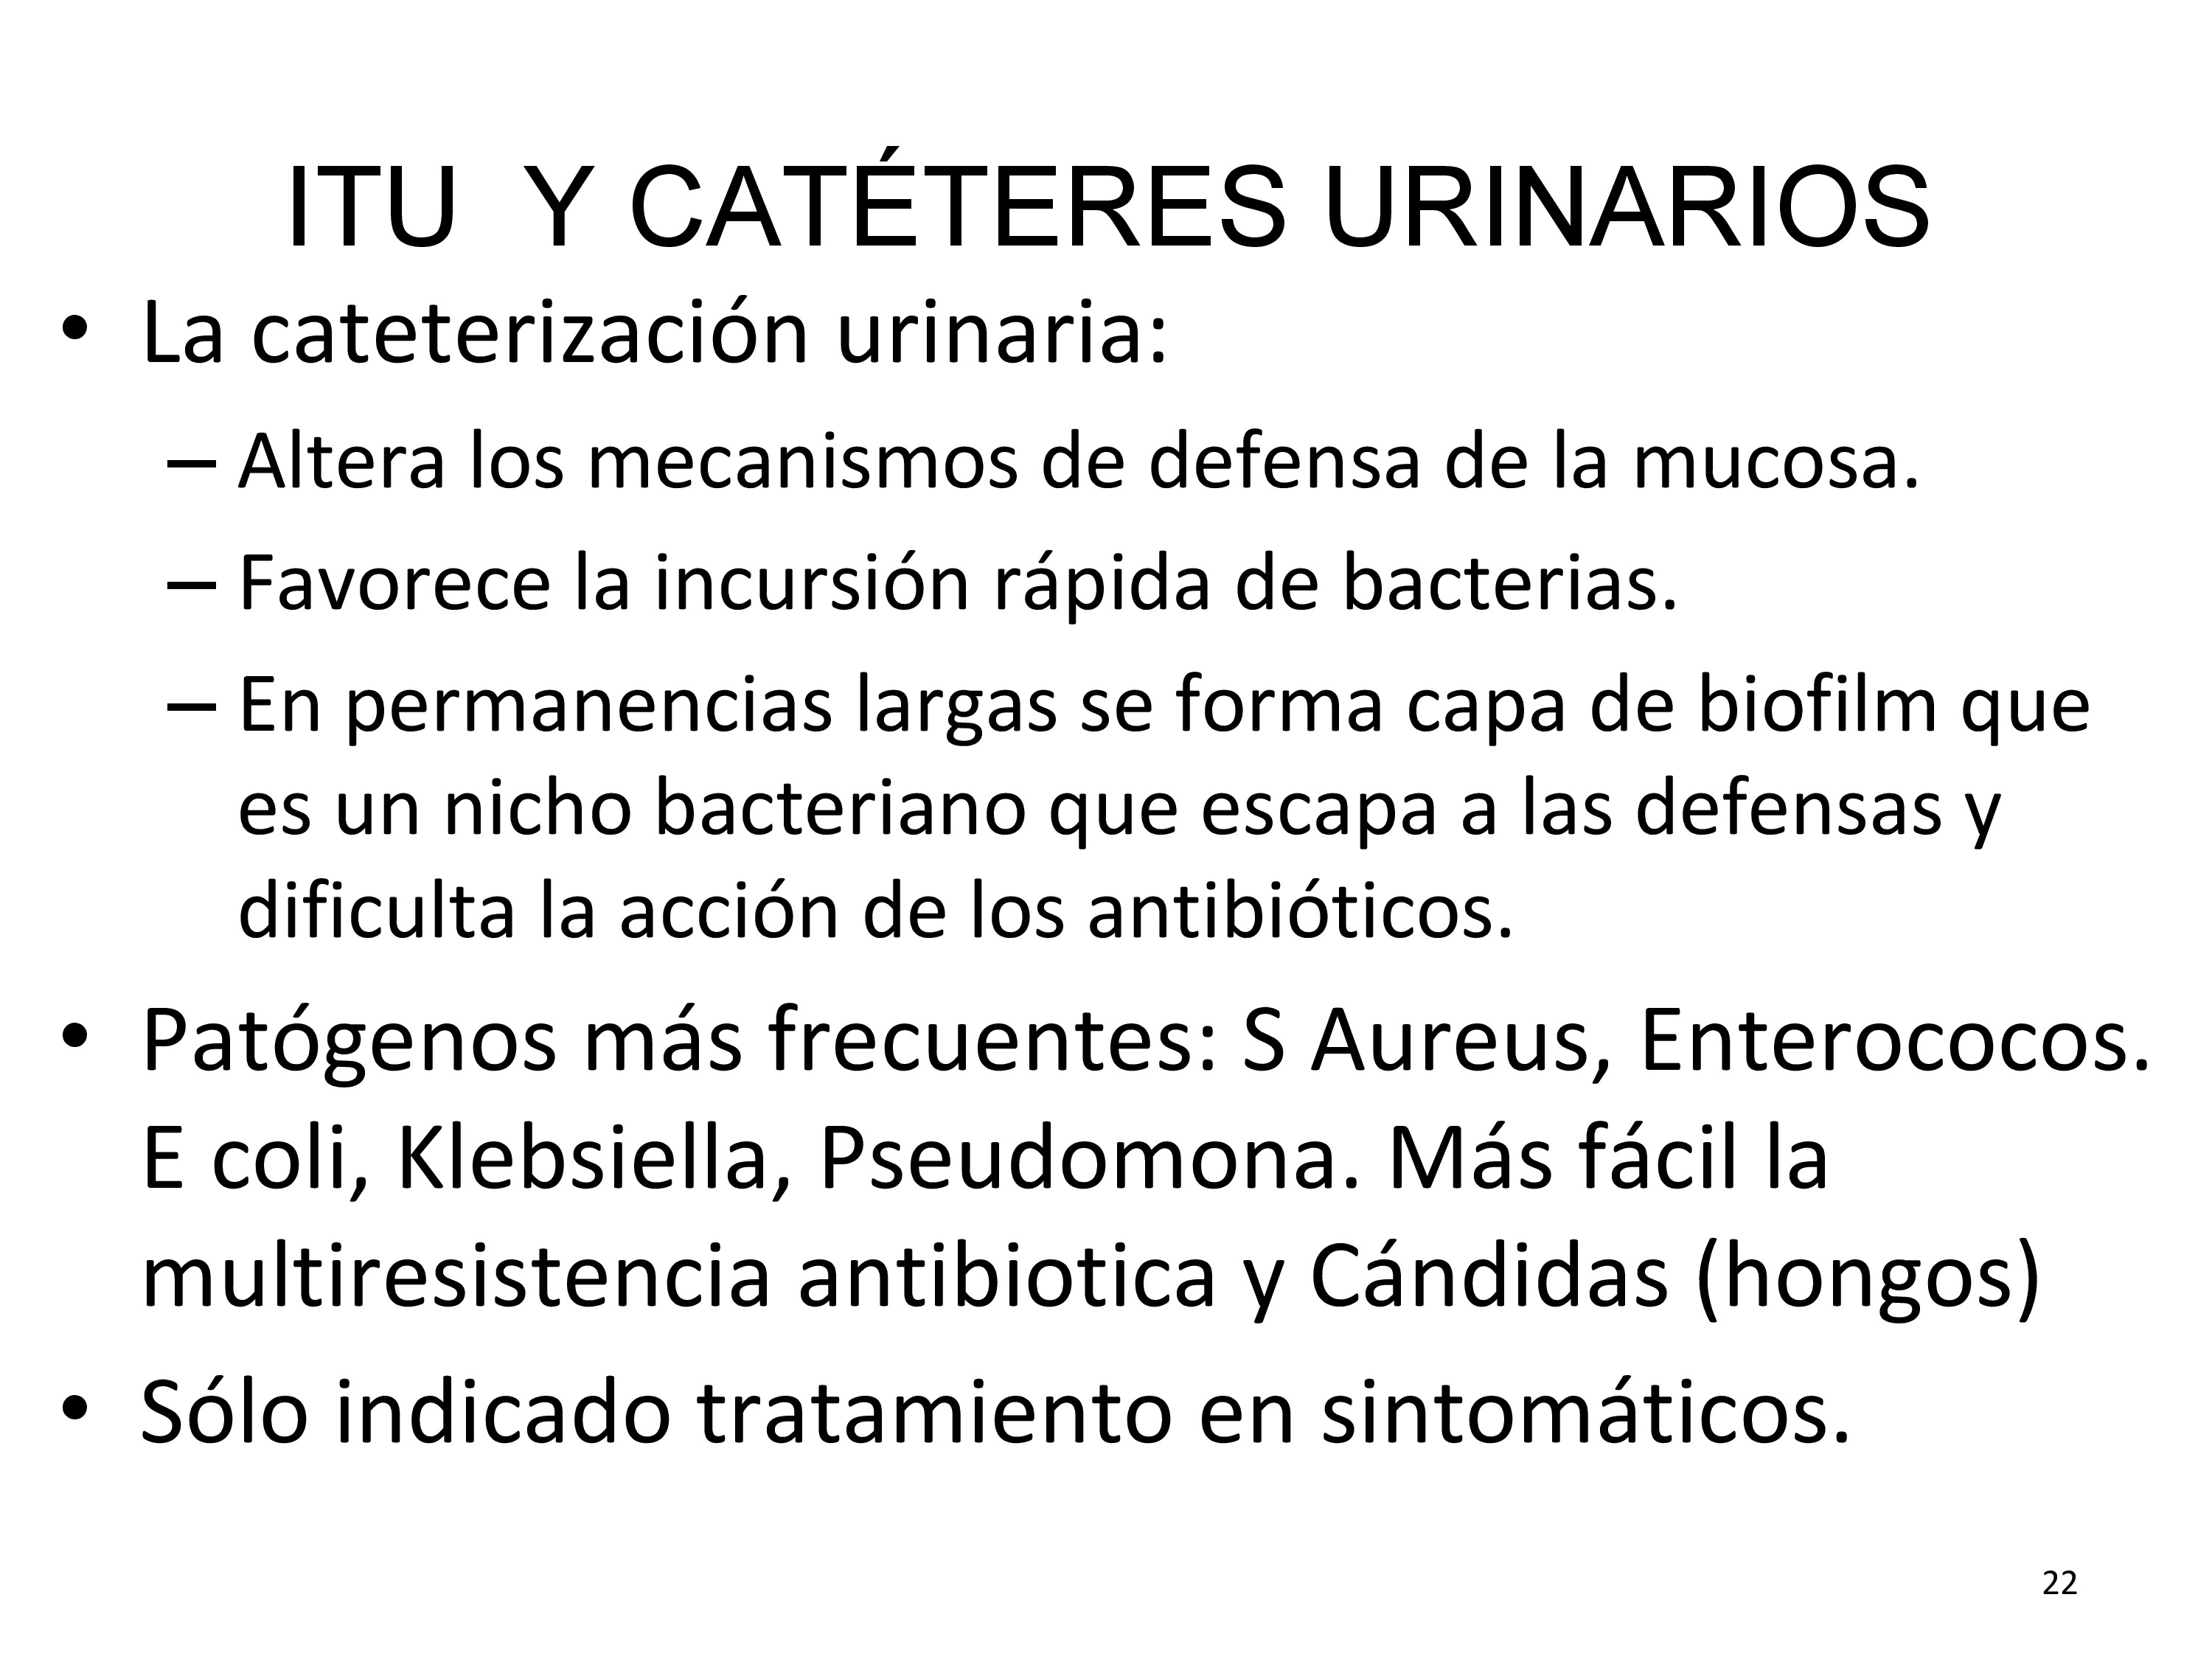 El factor más importante para la infección asociada a catéteres es el tiempo de permanencia, llega a ser del 100% a los 30 días.
Los síntomas asociados a infecciones de catéteres difieren de los habituales de las ITUs, son frecuentes a parte de la fiebre, la letargia y el disconfort, así como, la hematuria. Emn estos casos debe hacerse urocultivo siempre y sustituir el catéter urinario infectado.
Aproximadamente un 25% de los pacientes que ingresan en un hospital se les coloca una sonda vesical, muchas veces injustificadamente.